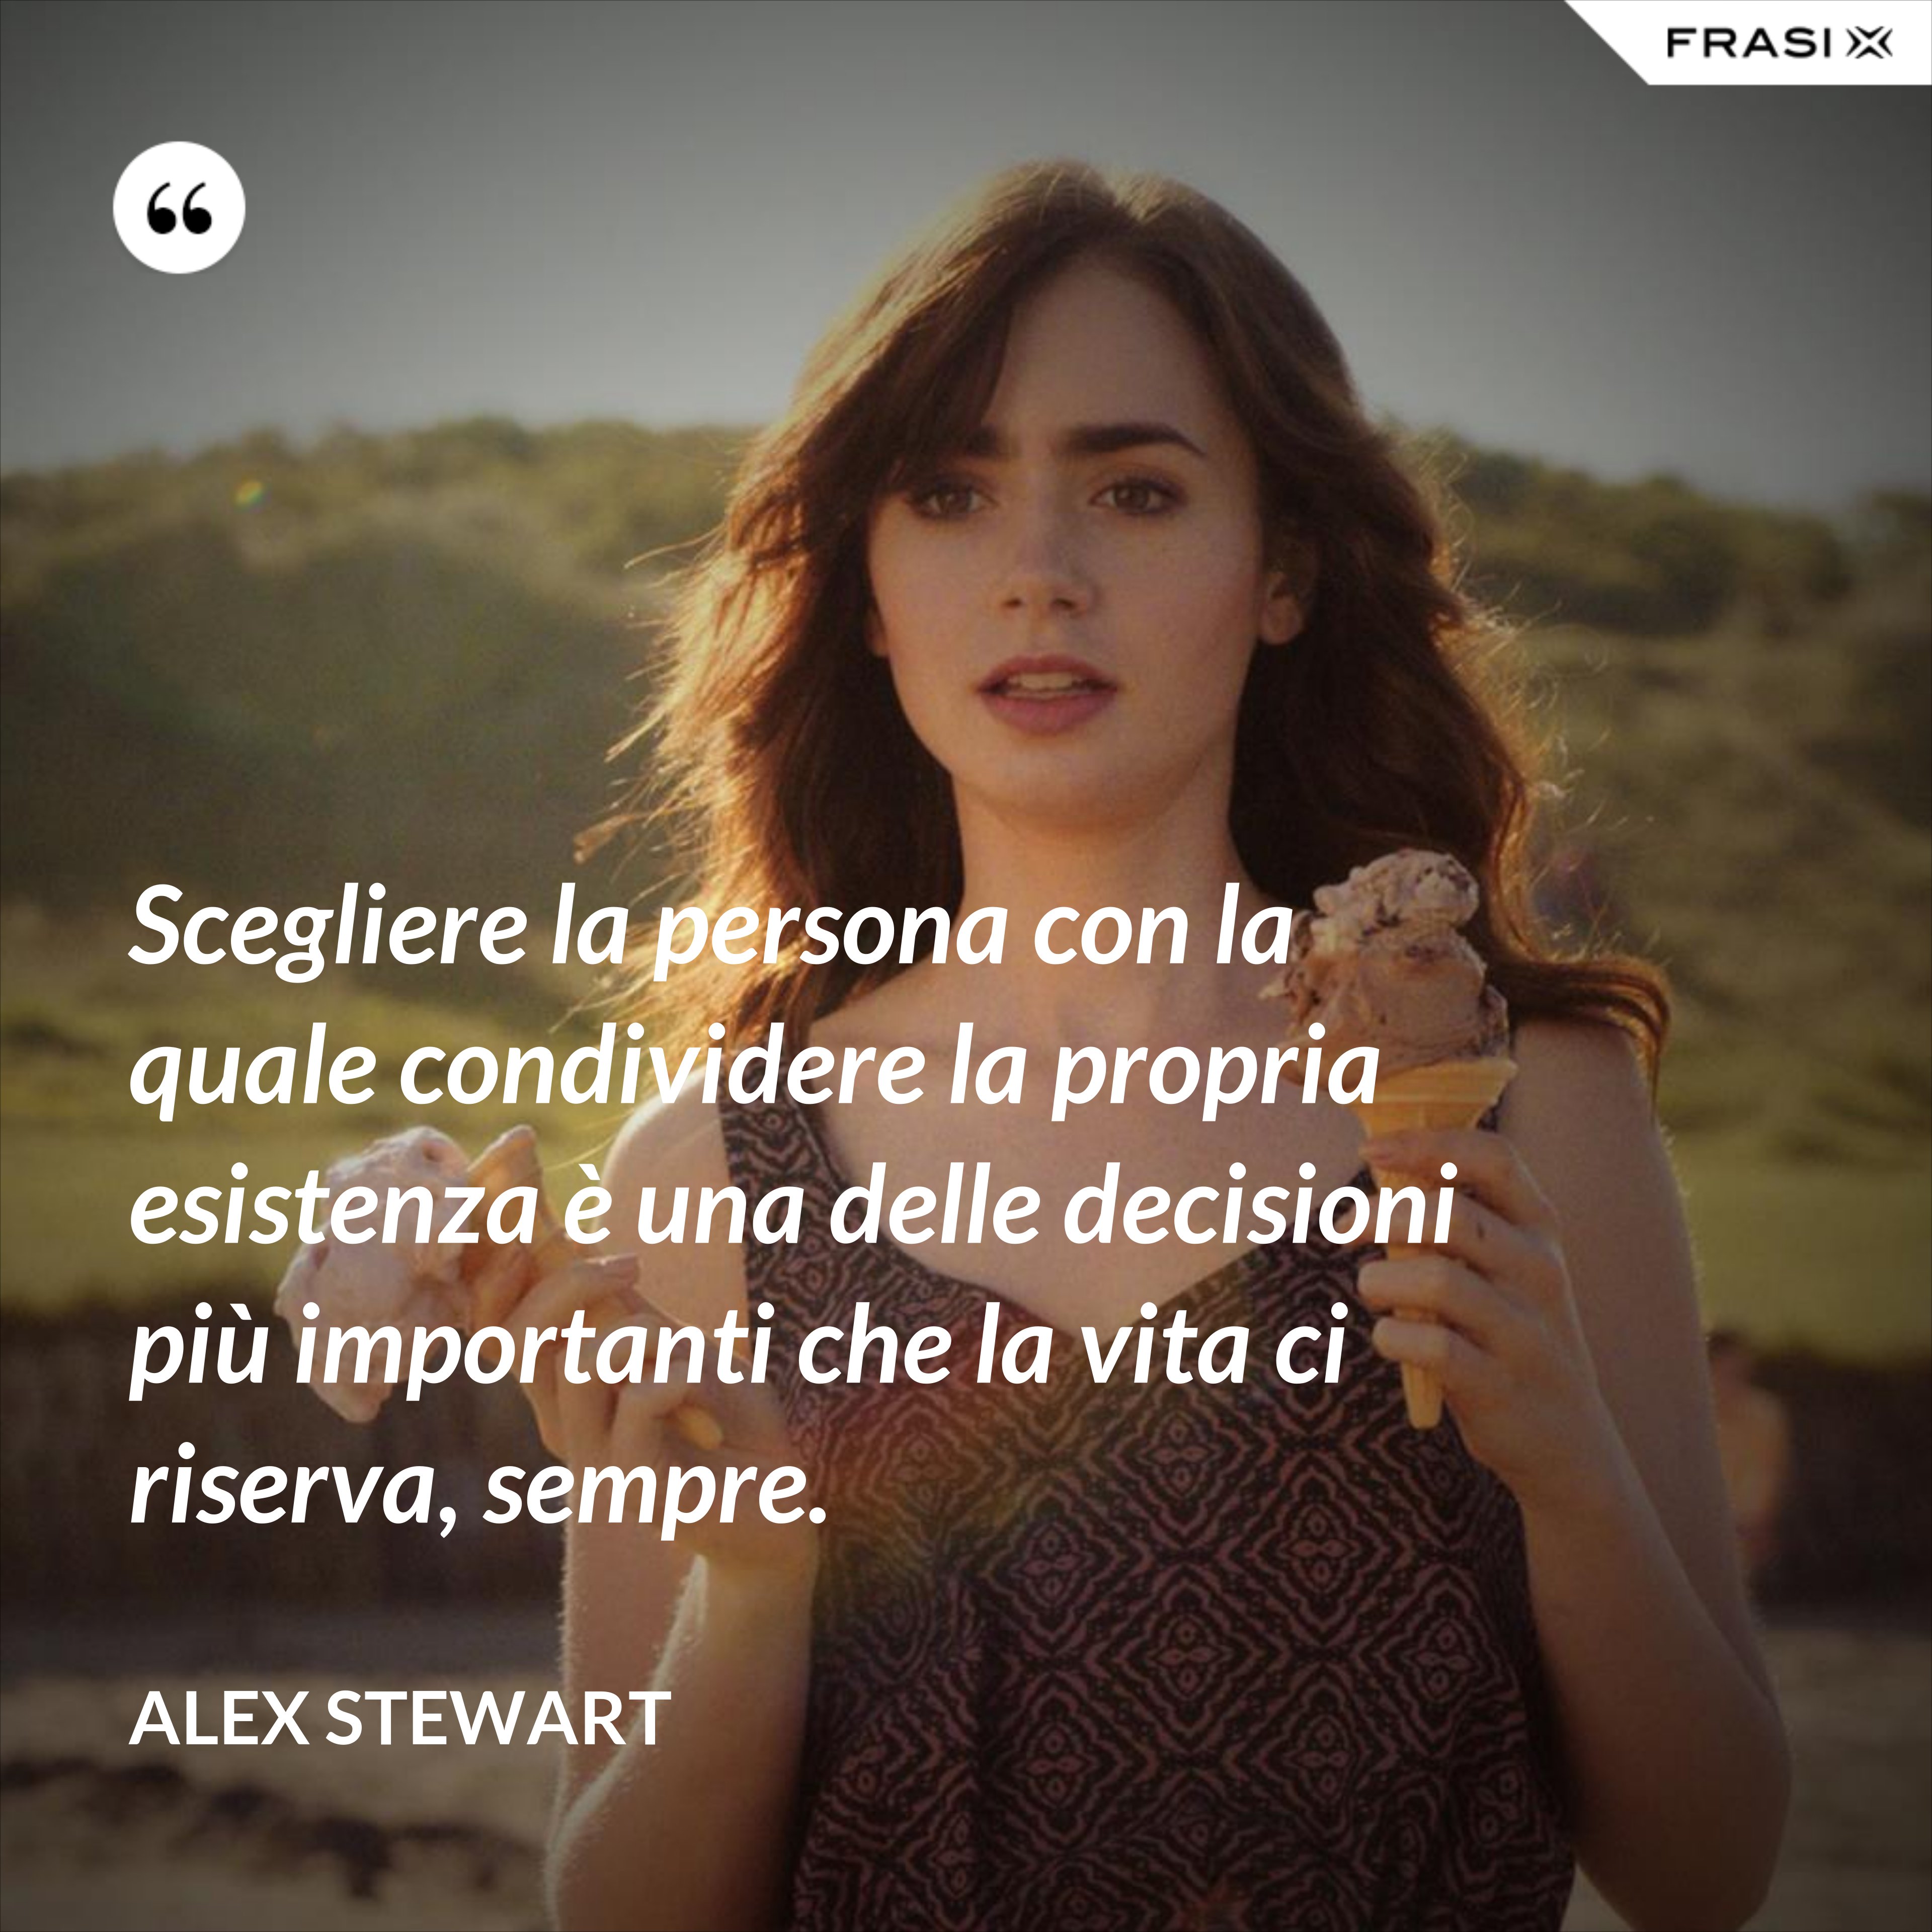 Scegliere la persona con la quale condividere la propria esistenza è una delle decisioni più importanti che la vita ci riserva, sempre. - Alex Stewart